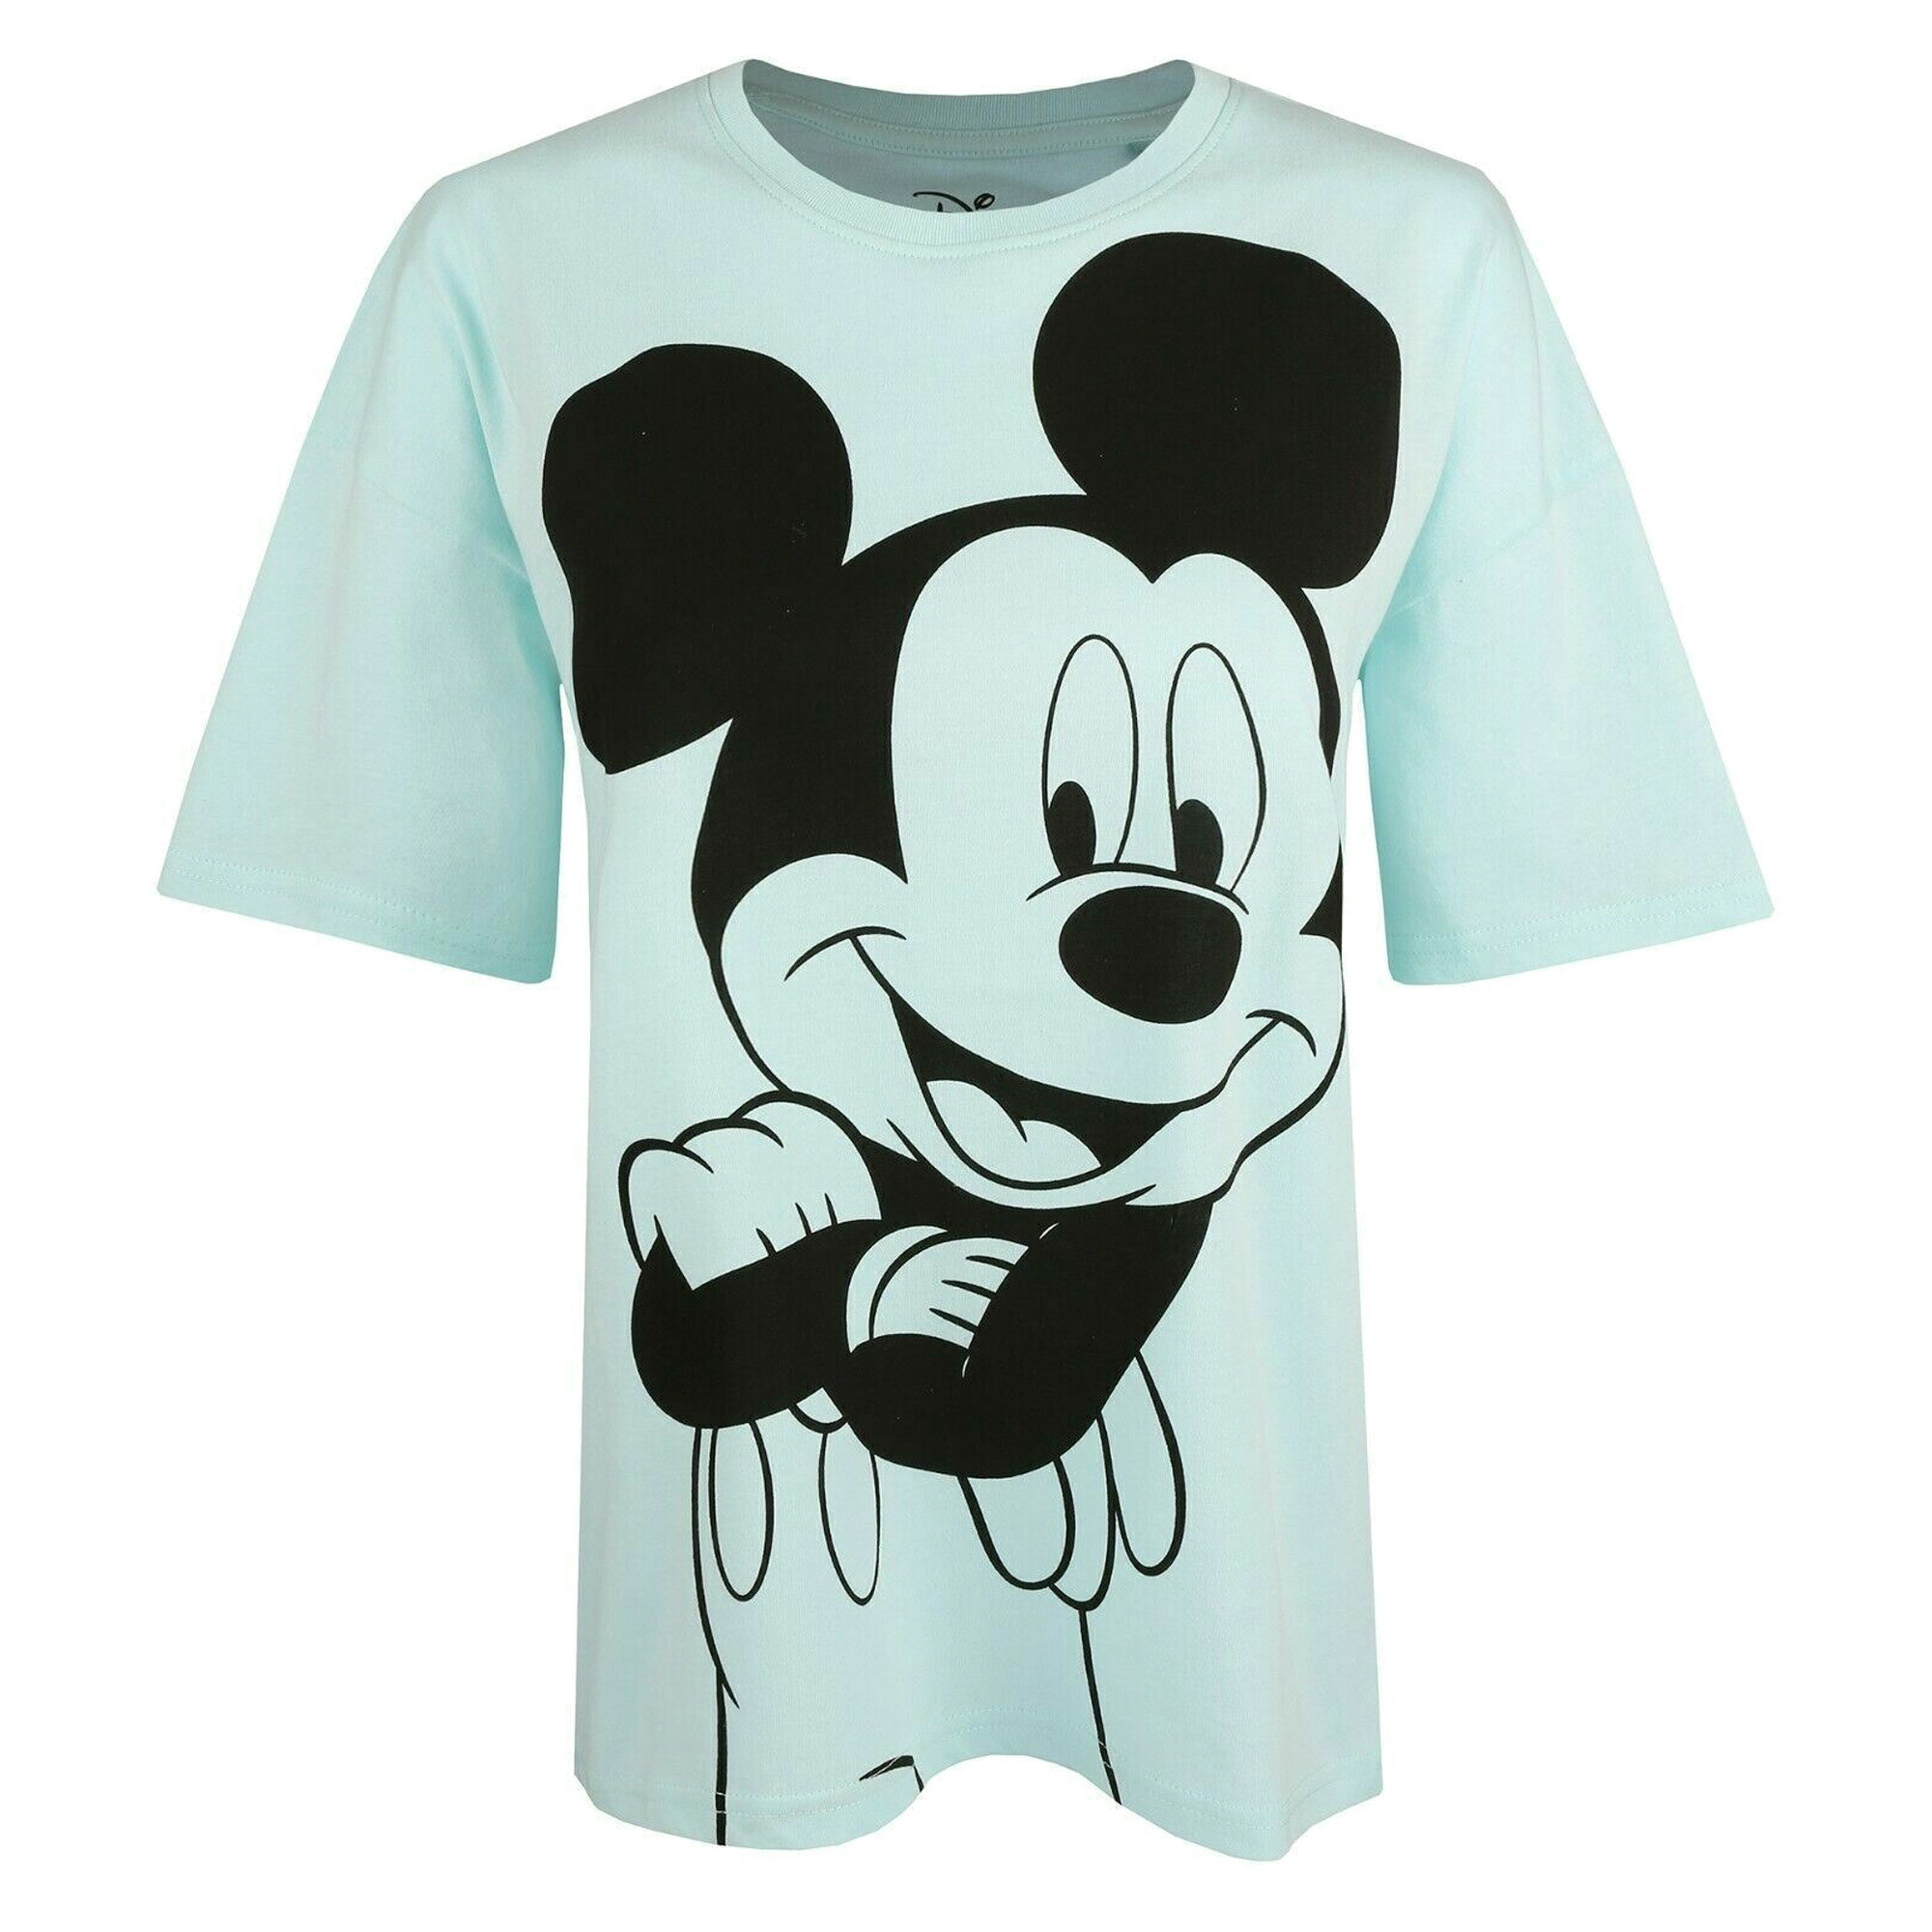 (ディズニー) Disney オフィシャル商品 レディース Stance Tシャツ ミッキーマウス 半袖 トップス 【海外通販】